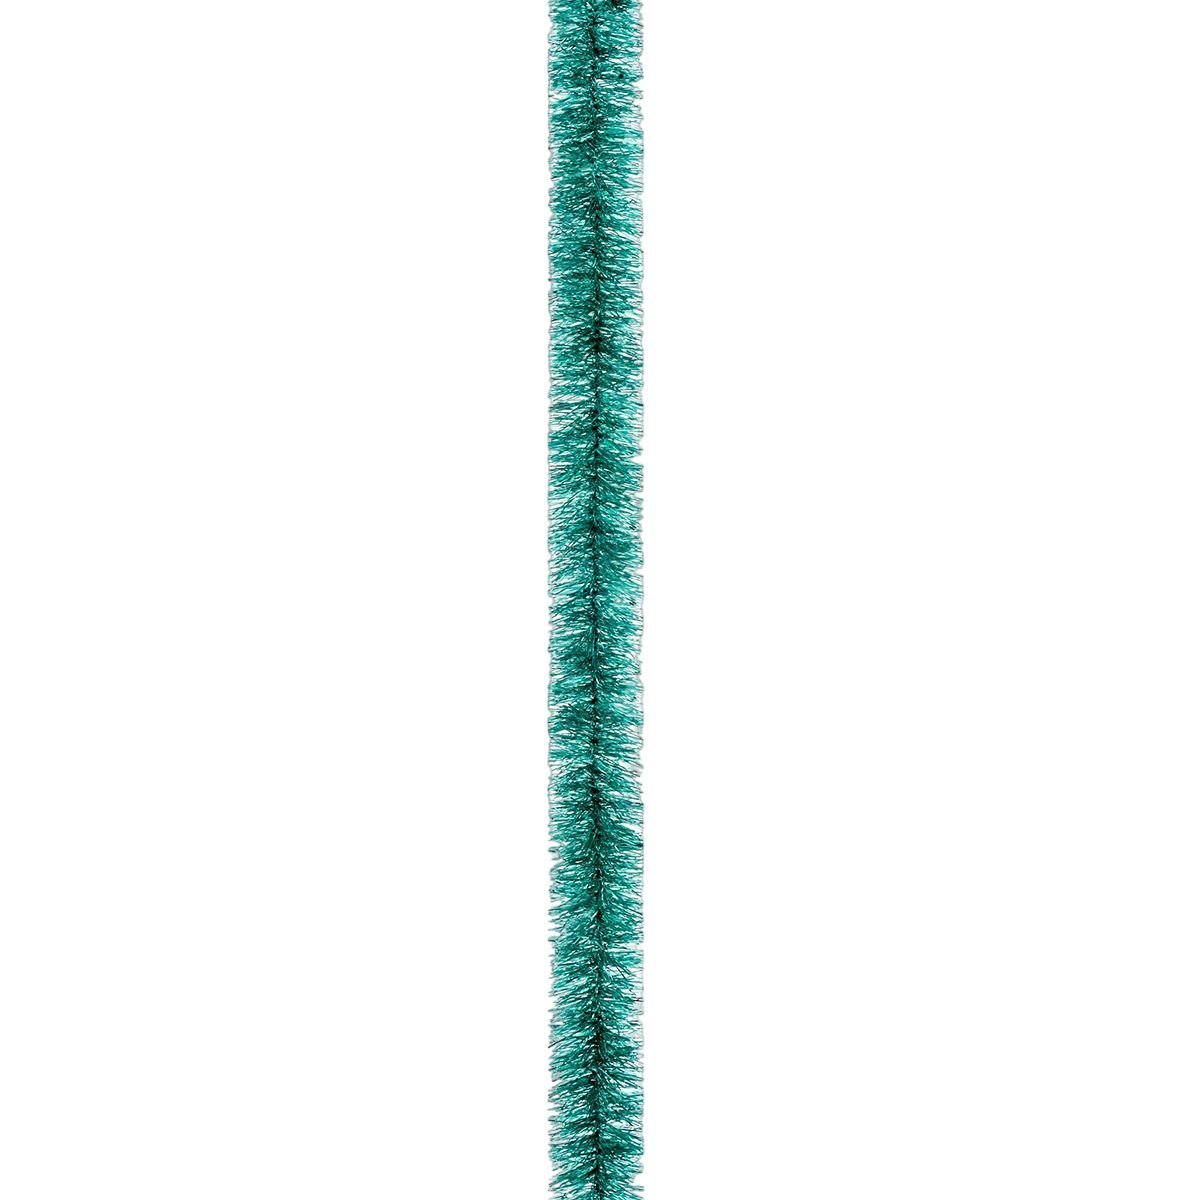 Мішура Novogod'ko Флекс 2.5 см 2 м зелений металік (980351) - фото 1